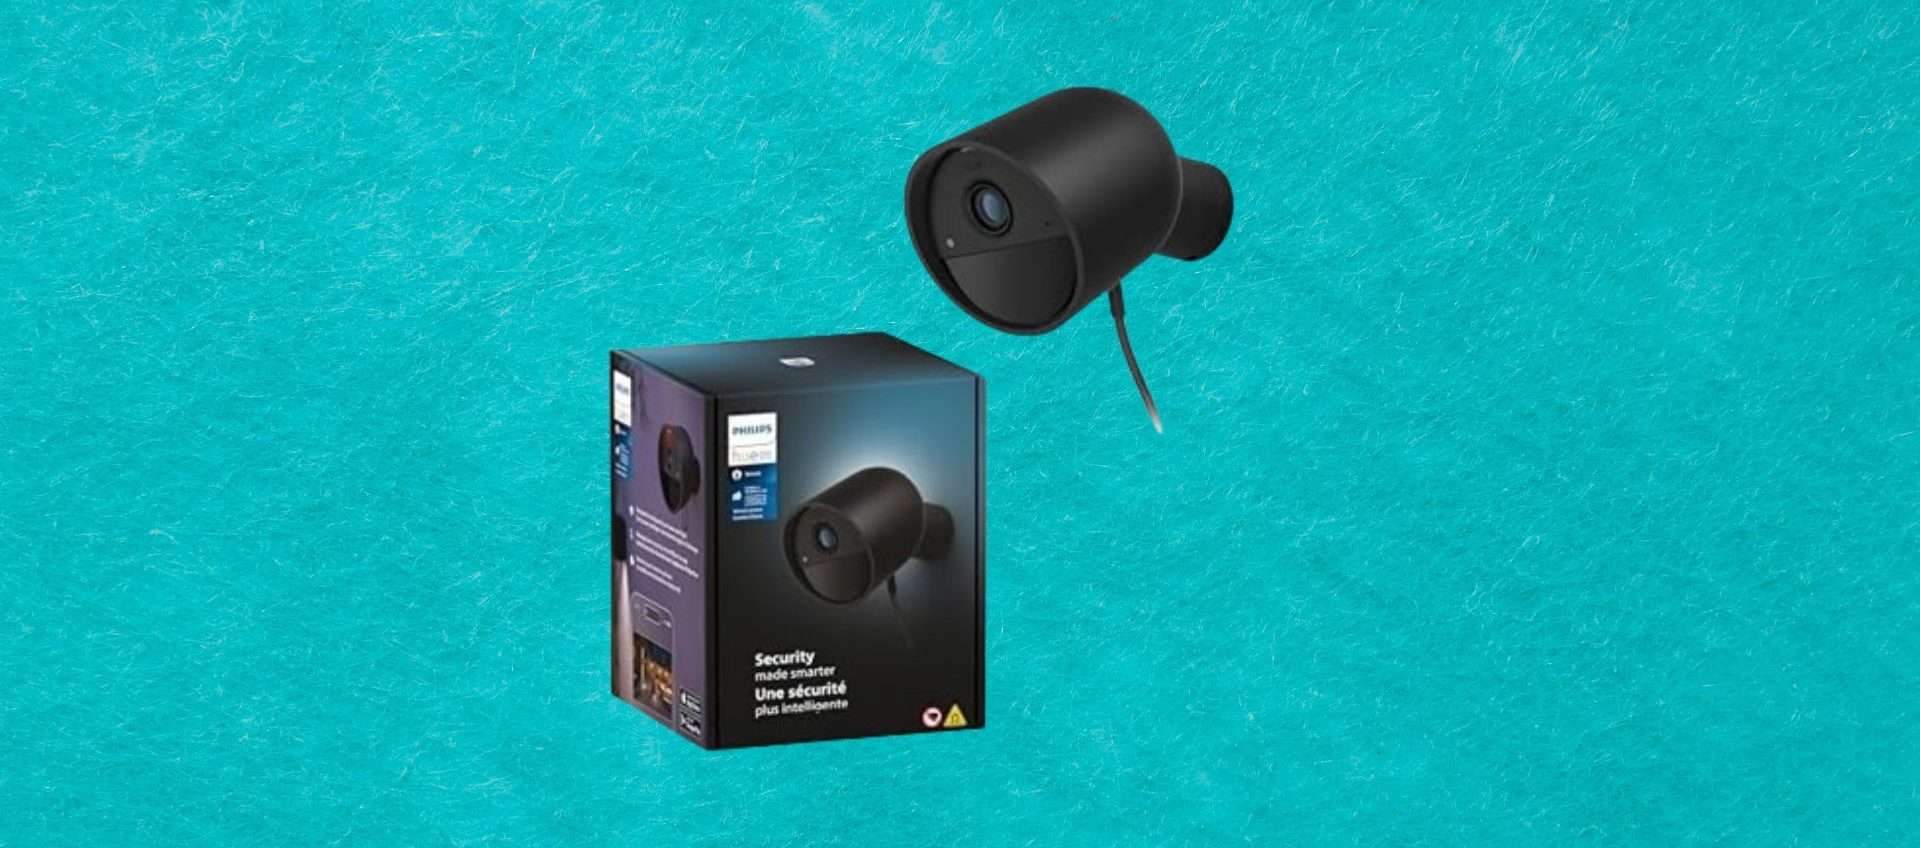 La domotica secondo Philips: telecamera di sicurezza Hue Secure in offerta ad un ottimo prezzo